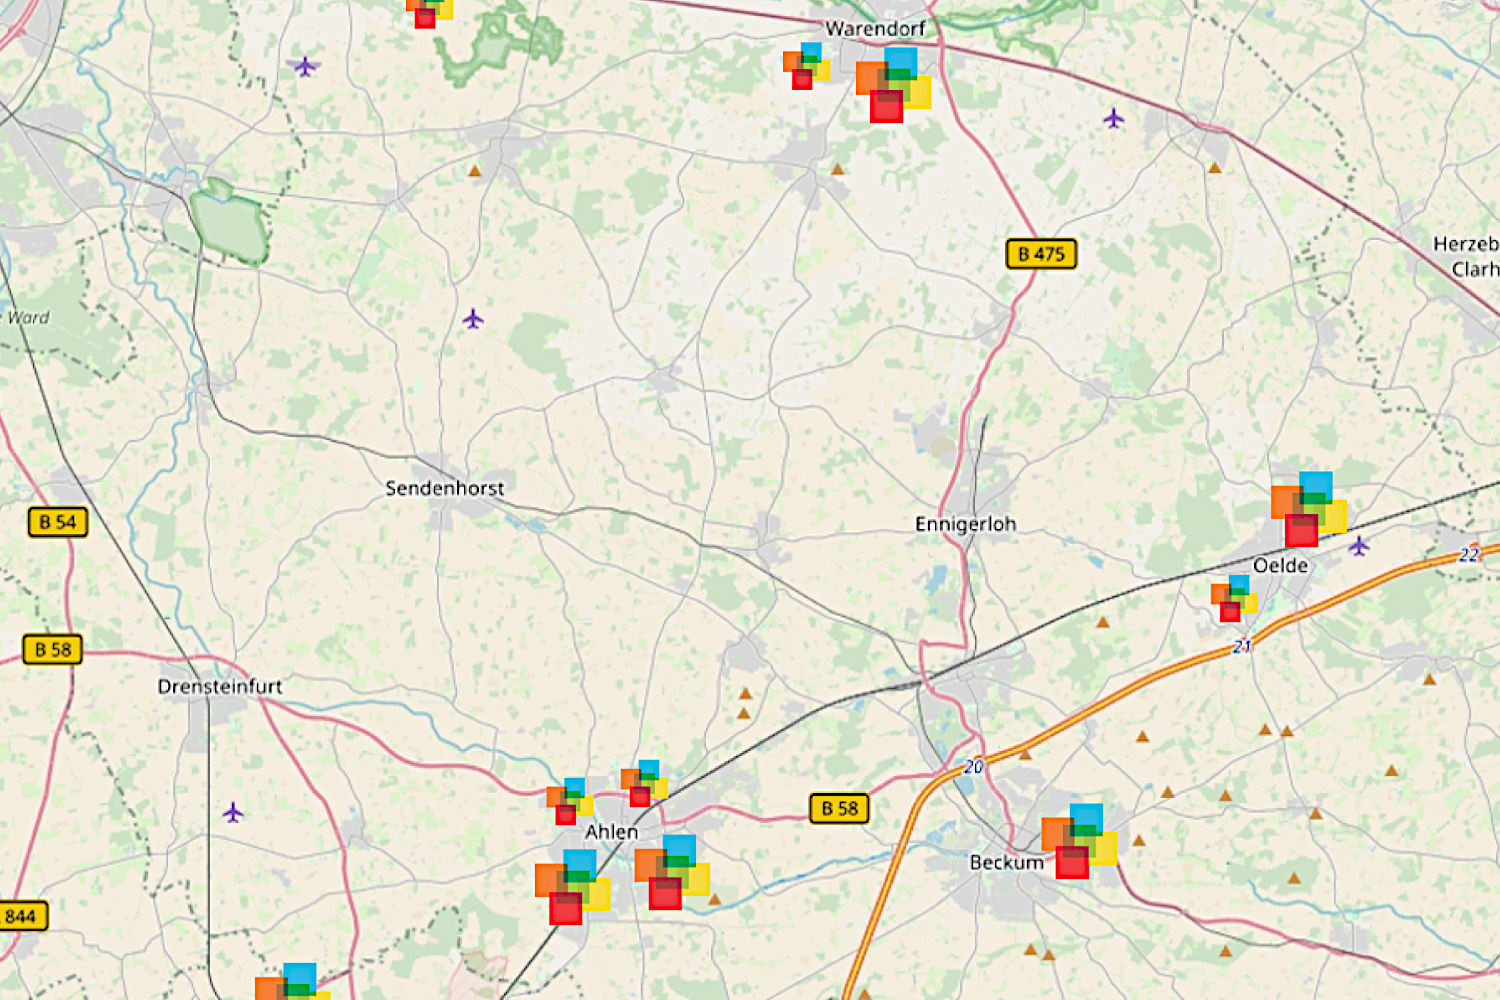 Bild zeigt: Kartenausschnitt mit Markierungen für die Zentren und Standorte im Kreis Warendorf